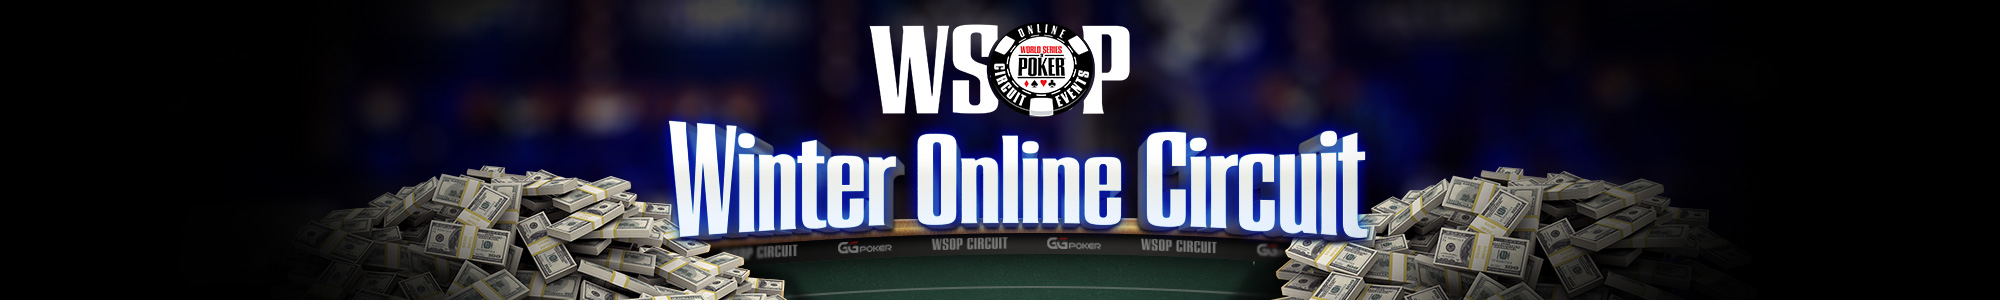 ggpoker poker online poker wsop evenimentul circuitului de iarnă wsop